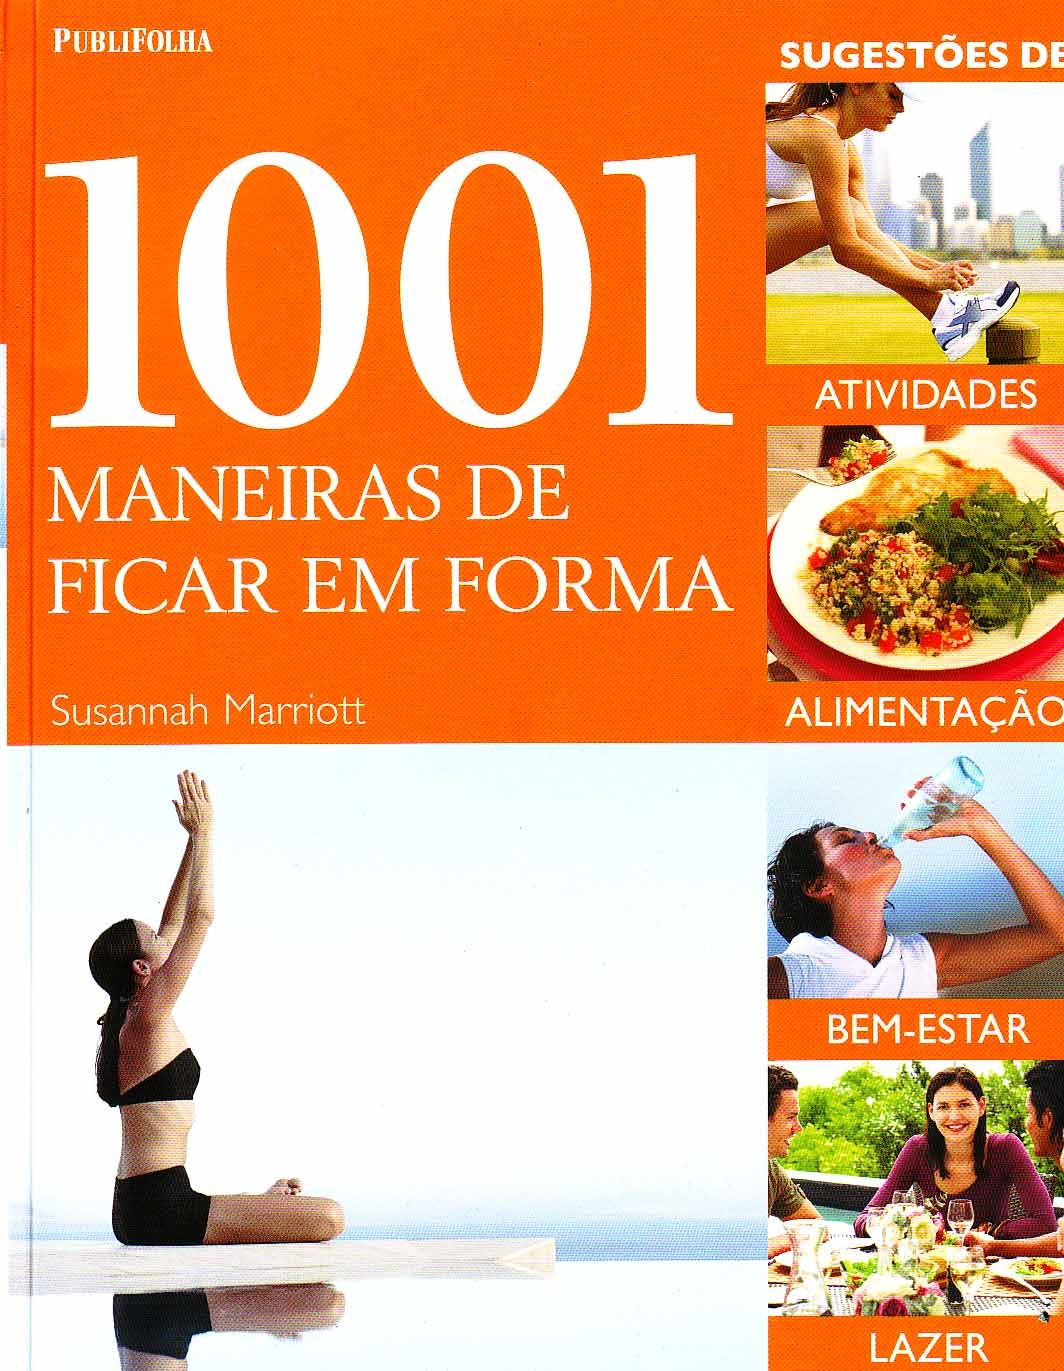 1001 MANEIRAS DE FICAR EM FORMA